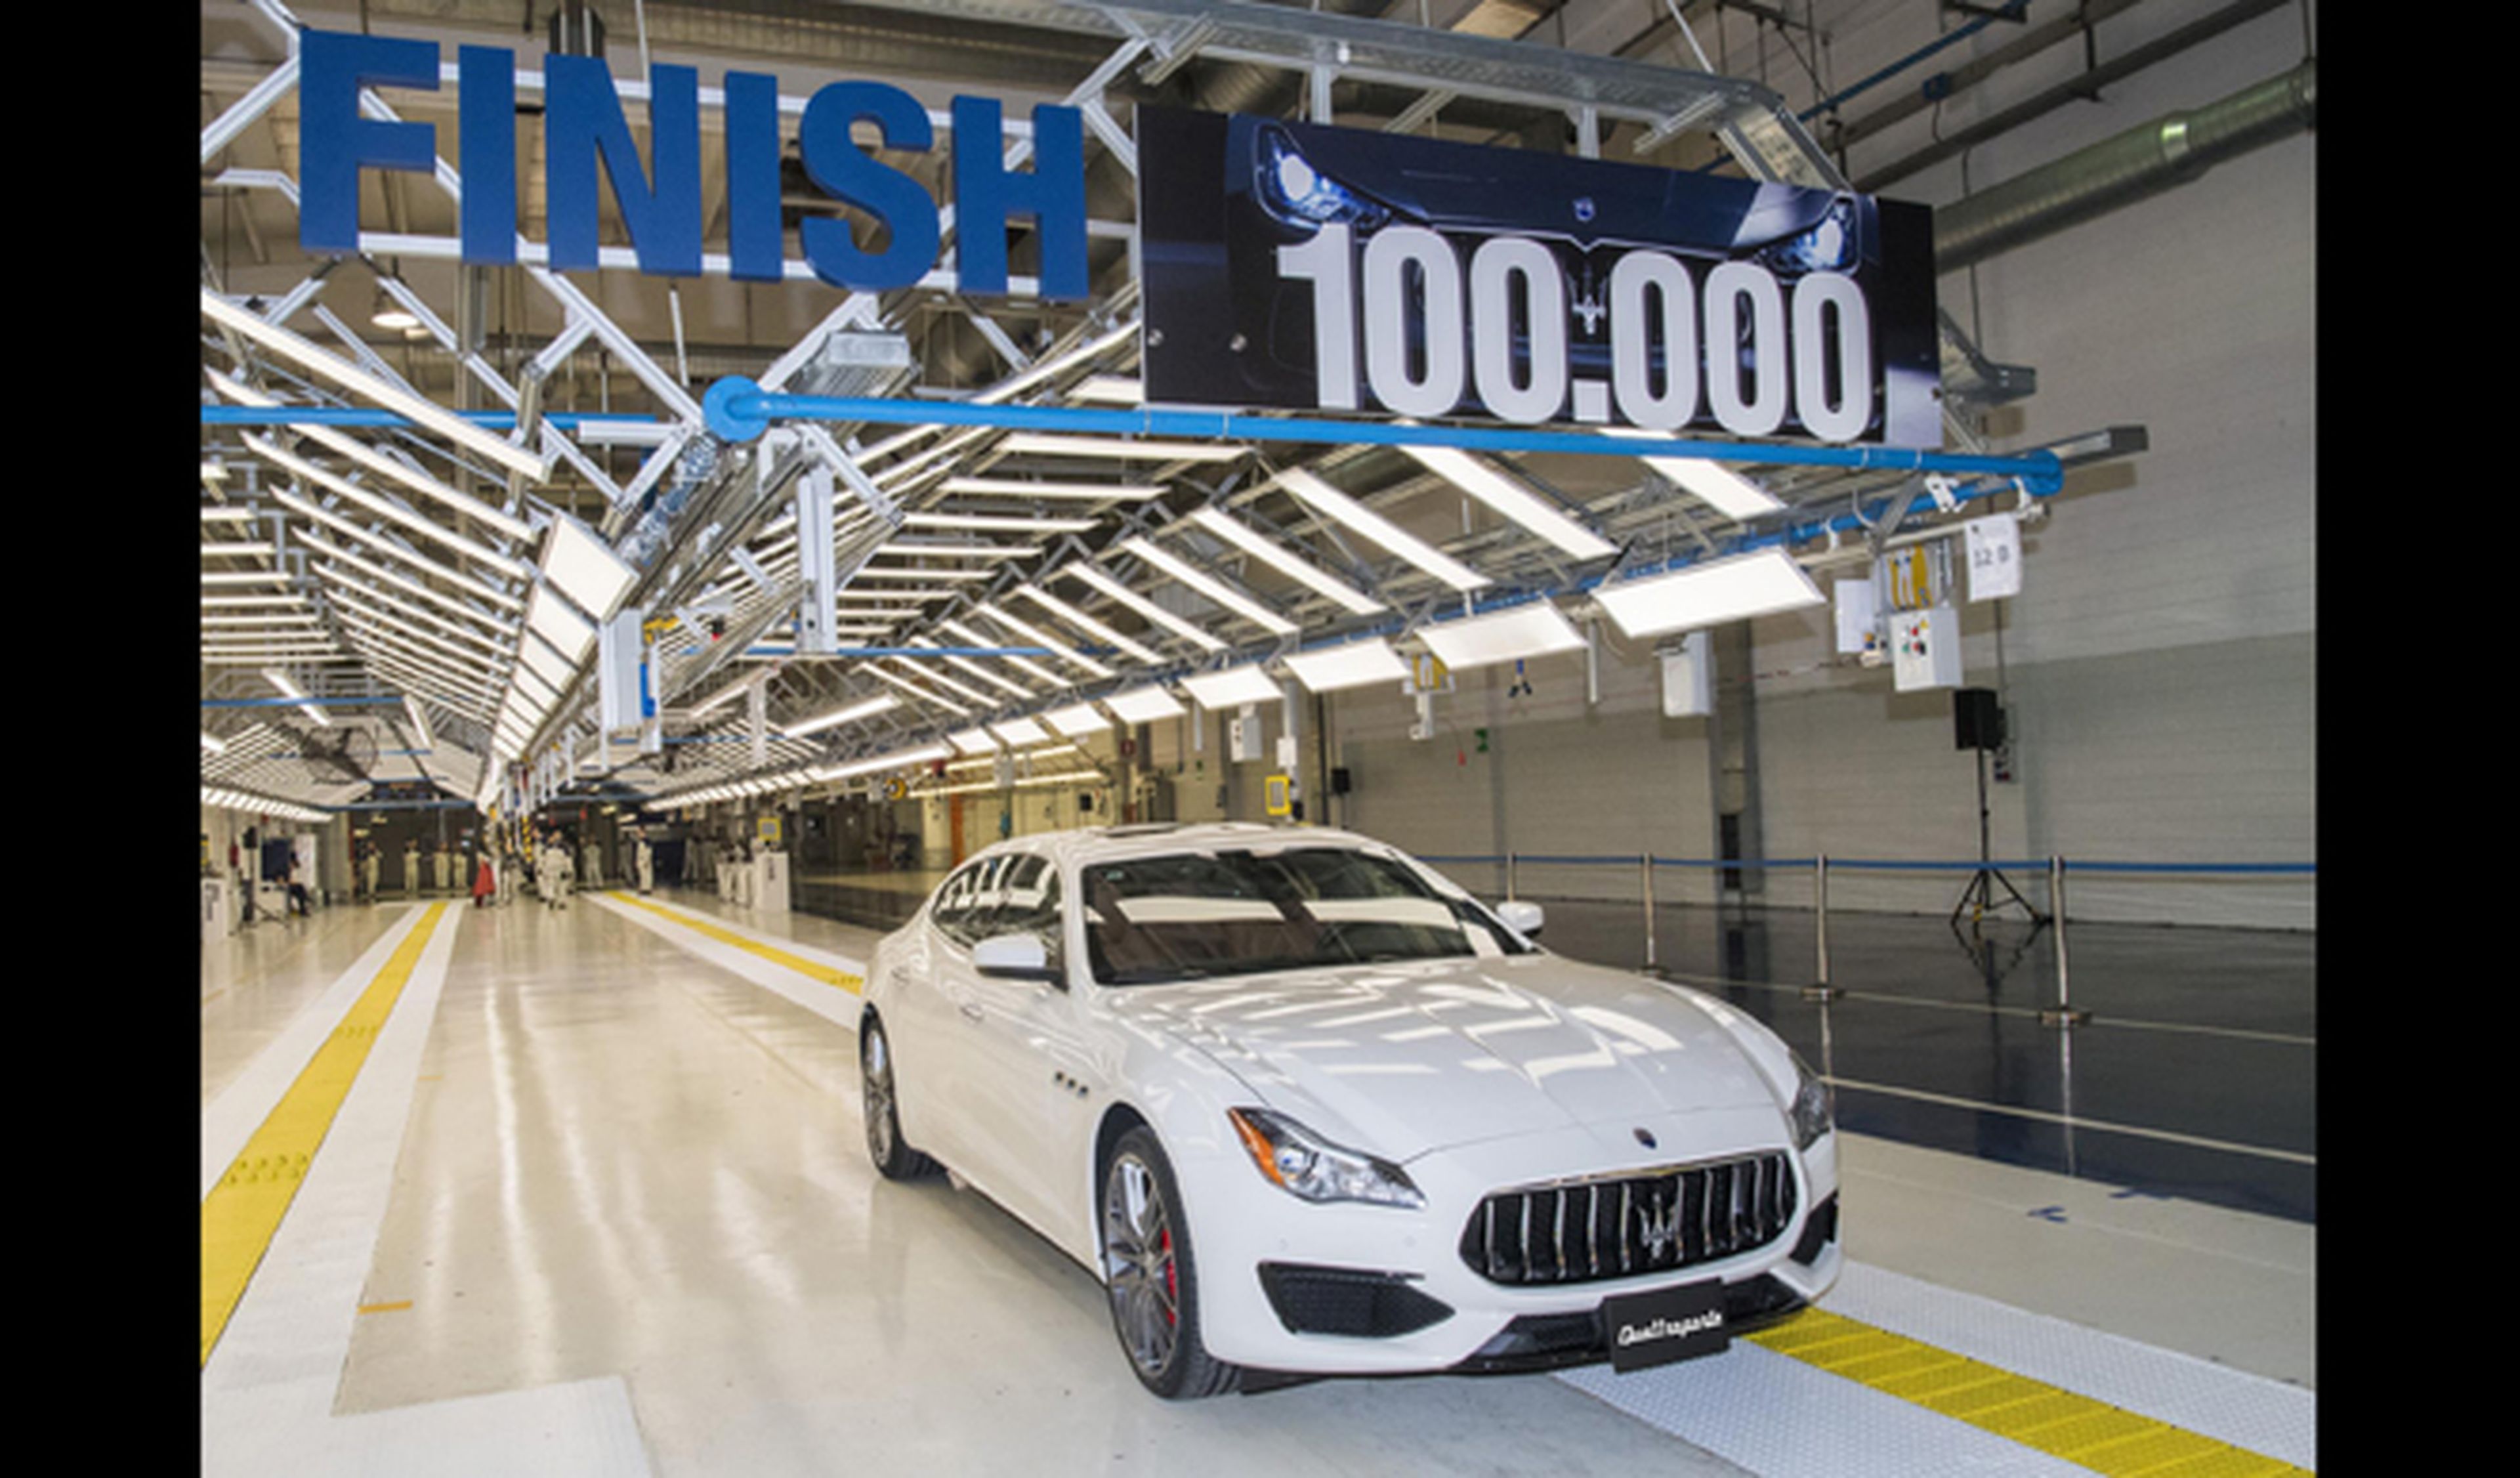 Maserati fabrica su coche número 100.000, ¿Sabes cuál es?